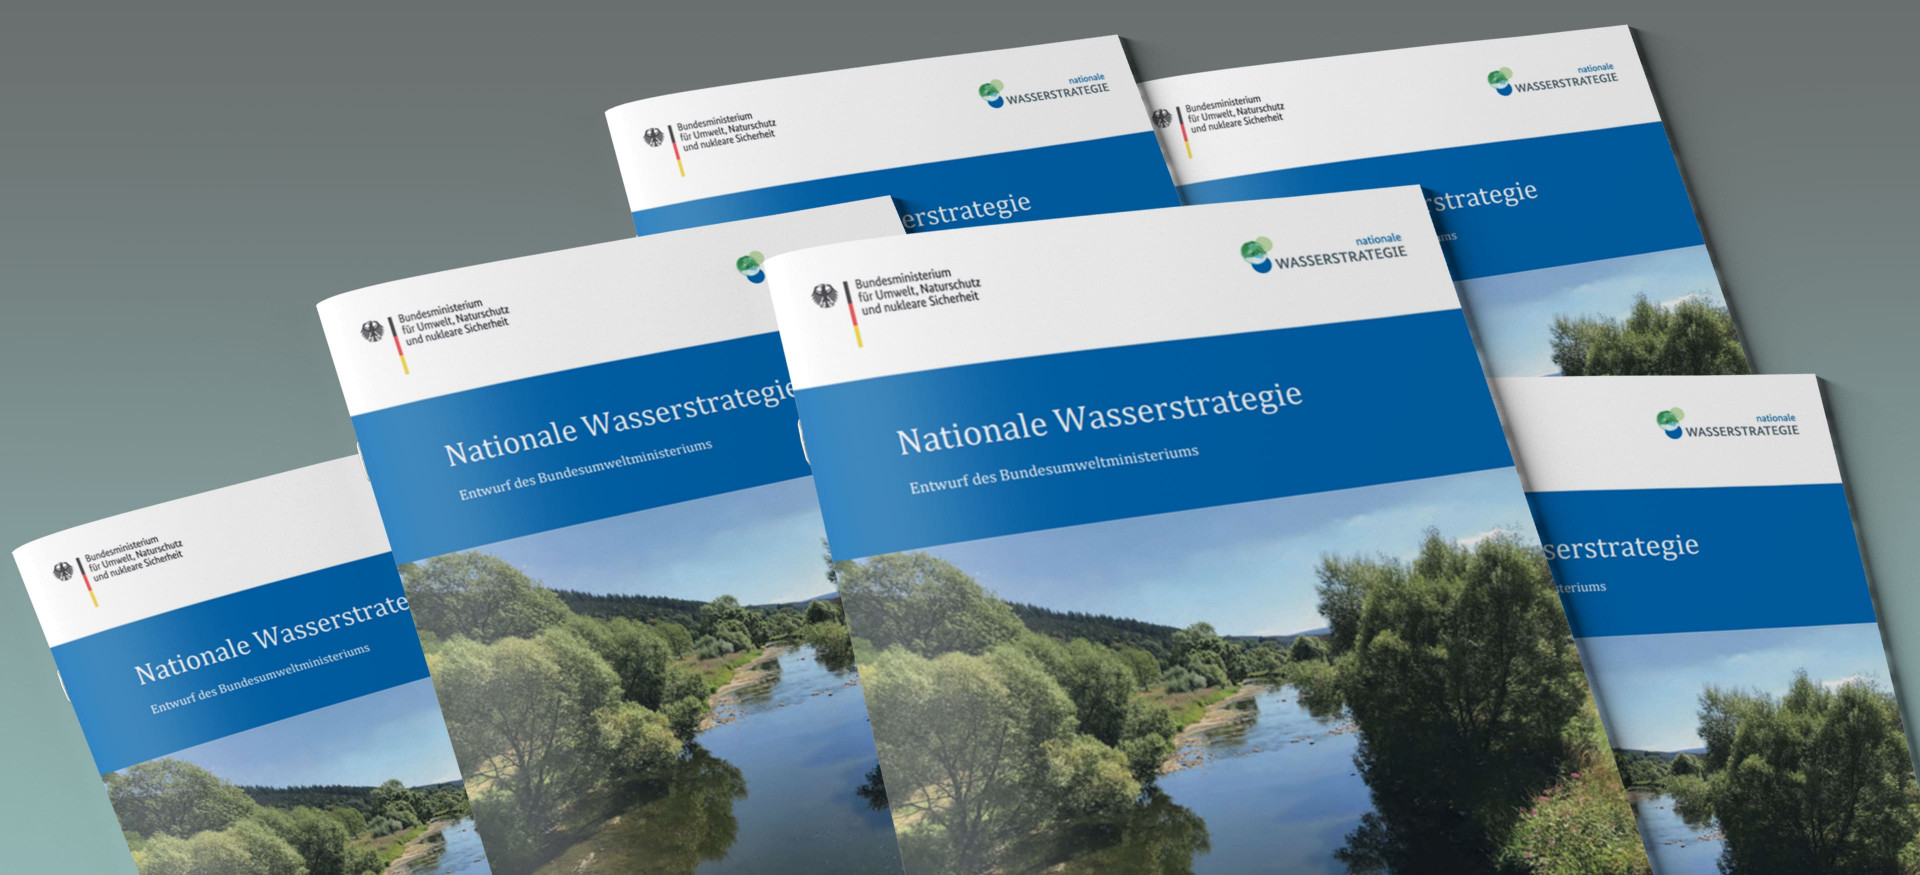 Das Bild zeigt einen Stapel Broschüren mit dem Titel "Nationale Wasserstrategie".